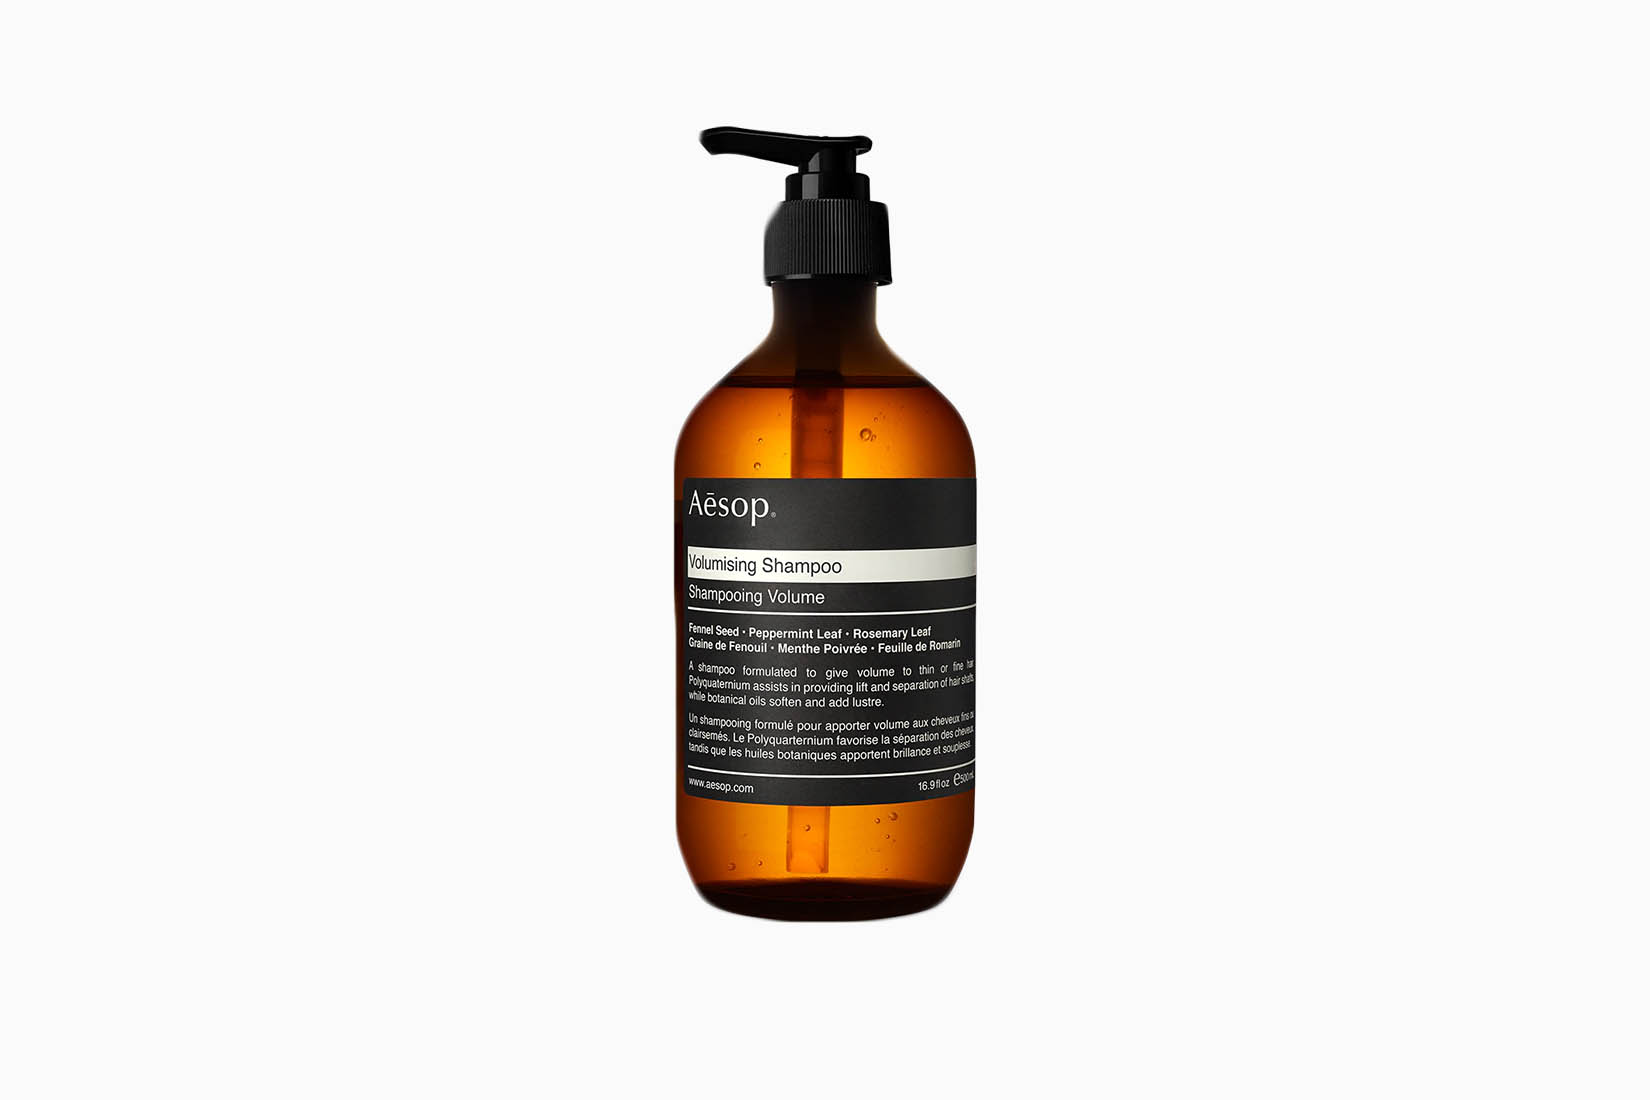 Meilleur shampoing contre la chute des cheveux pour hommes - Aesop Review - Luxe Digital